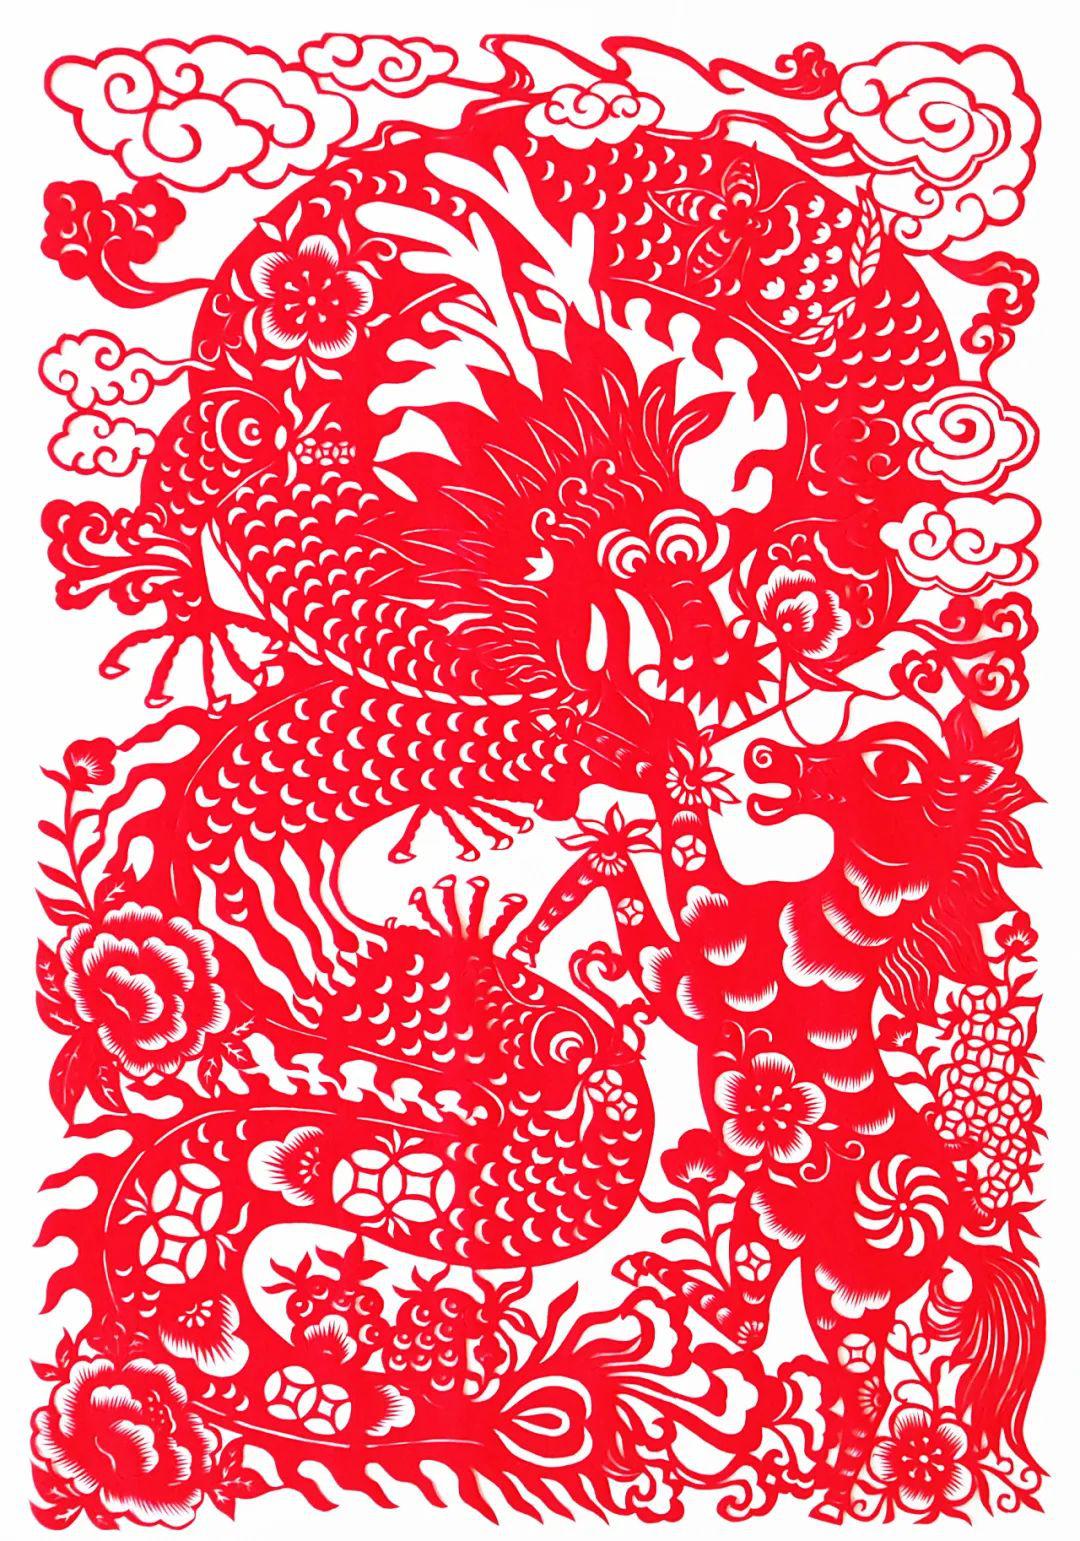 中国民间剪纸微刊《百年献瑞迎新年》全国龙文化剪纸精品展览 图131